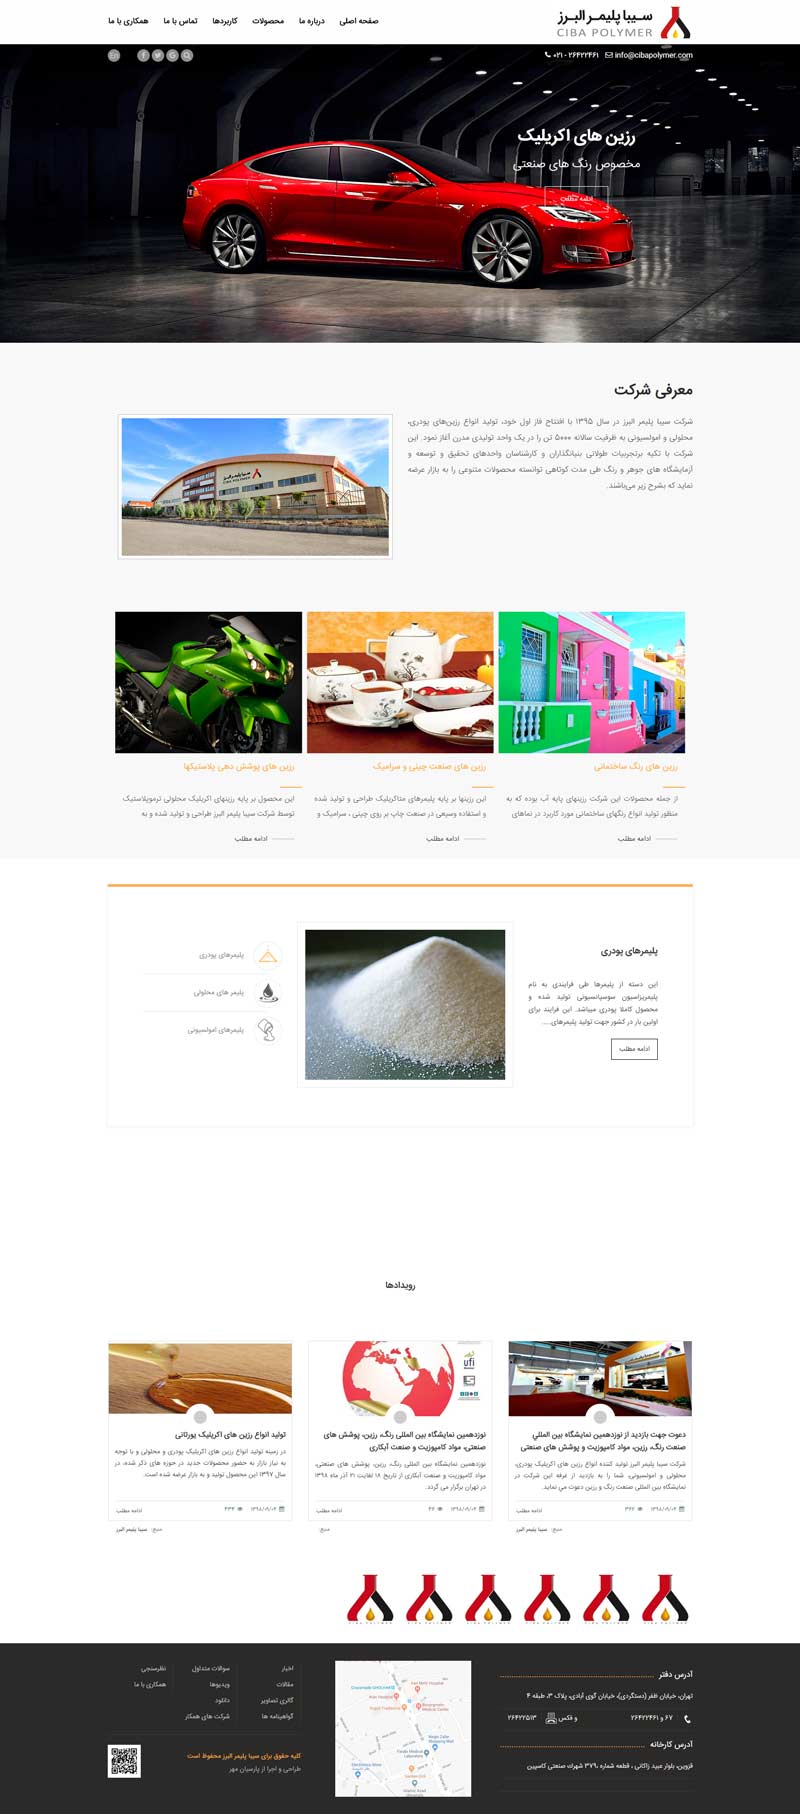 طراحی سایت شرکت سیبا پلیمر البرز